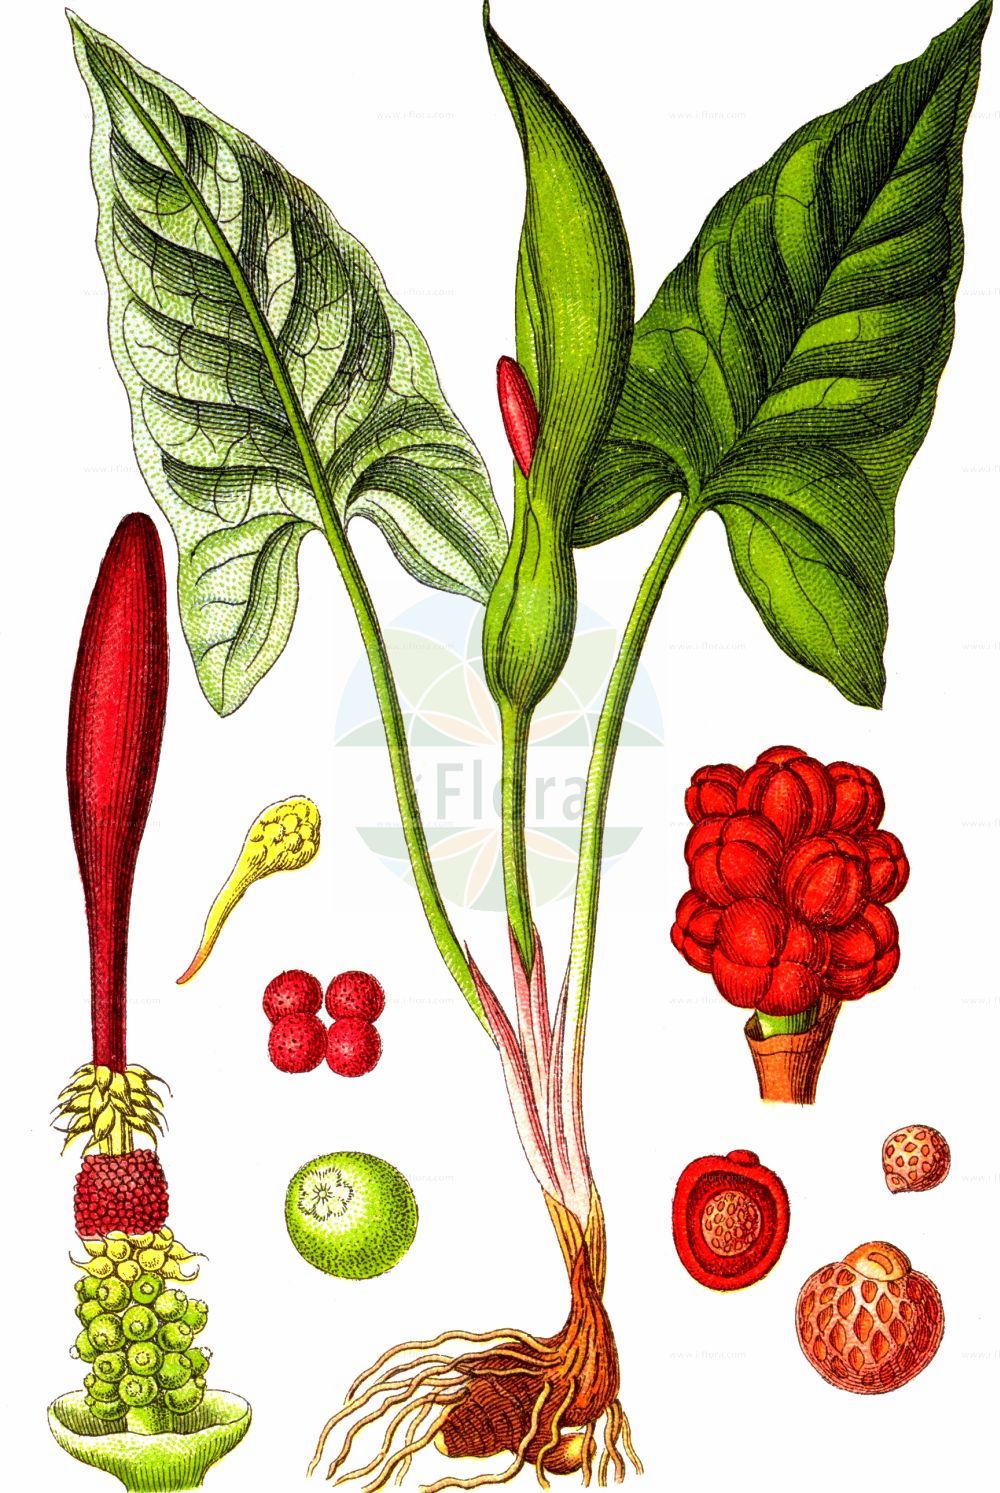 Historische Abbildung von Arum maculatum (Gefleckter Aronstab - Lords-and-Ladies). Das Bild zeigt Blatt, Bluete, Frucht und Same. ---- Historical Drawing of Arum maculatum (Gefleckter Aronstab - Lords-and-Ladies). The image is showing leaf, flower, fruit and seed.(Arum maculatum,Gefleckter Aronstab,Lords-and-Ladies,Arisarum maculatum,Arum gracile,Arum heldreichii,Arum immaculatum,Arum maculatum,Arum malyi,Arum pyrenaeum,Arum trapezuntinum,Arum vernale,Arum vulgare,Arum zelebori,Gefleckter Aronstab,Suedoestlicher Aronstab,Lords-and-Ladies,Arum,Aronstab,Arum Lily,Araceae,Aronstabgewächse,Arum Lily family,Blatt,Bluete,Frucht,Same,leaf,flower,fruit,seed,Sturm (1796f))